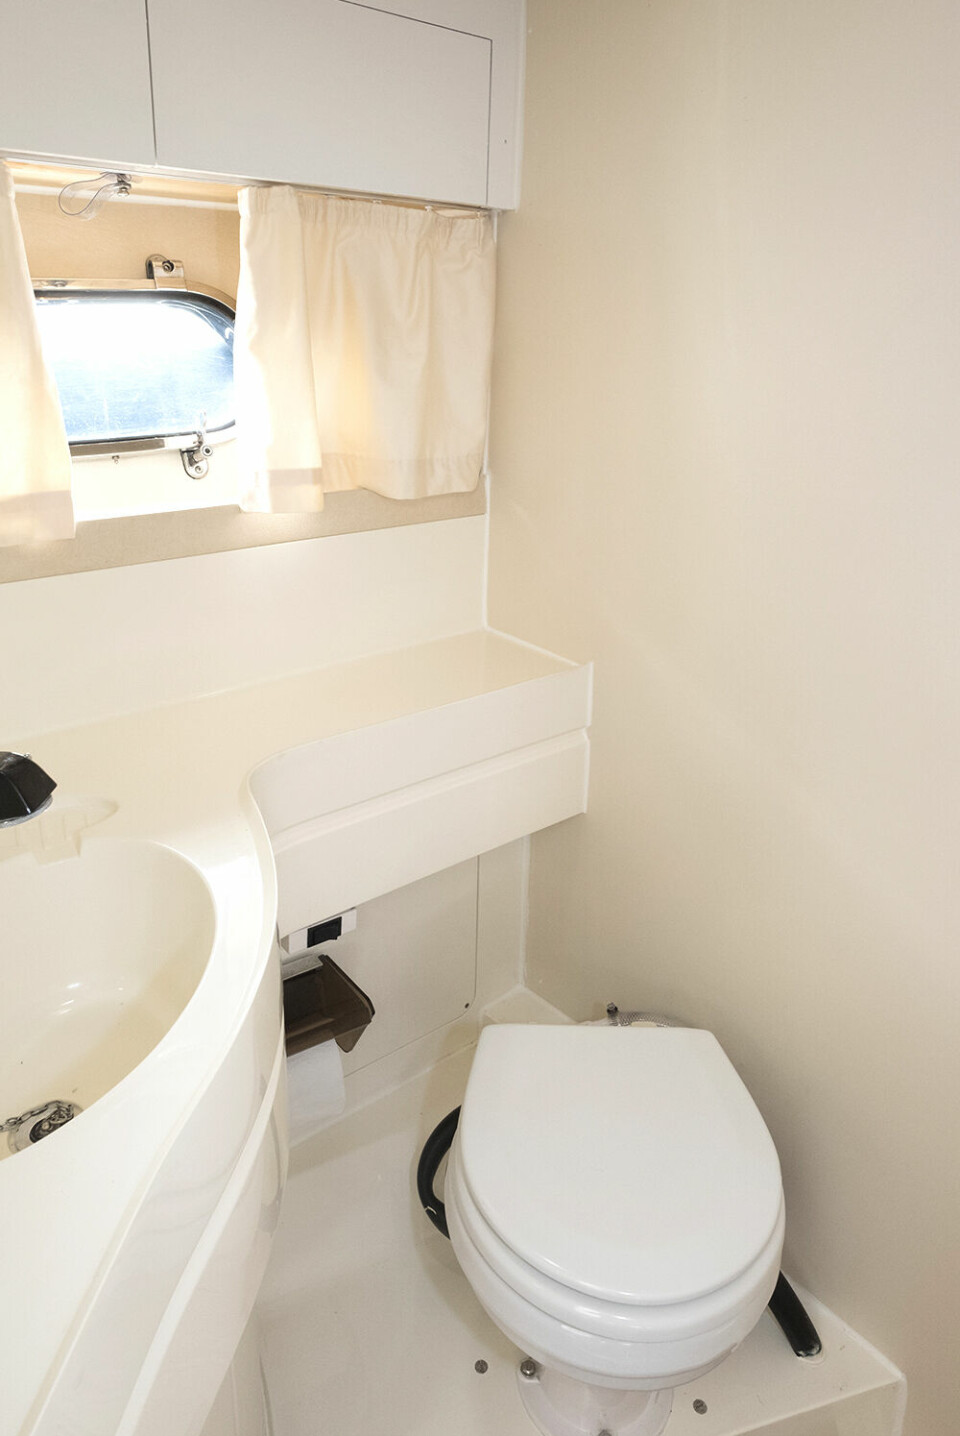 TOALETTROM: Toalettrommet er helt greit med trallverk på dørken og muligheter for å dusje. Det er ståhøyde på 177 centimeter.